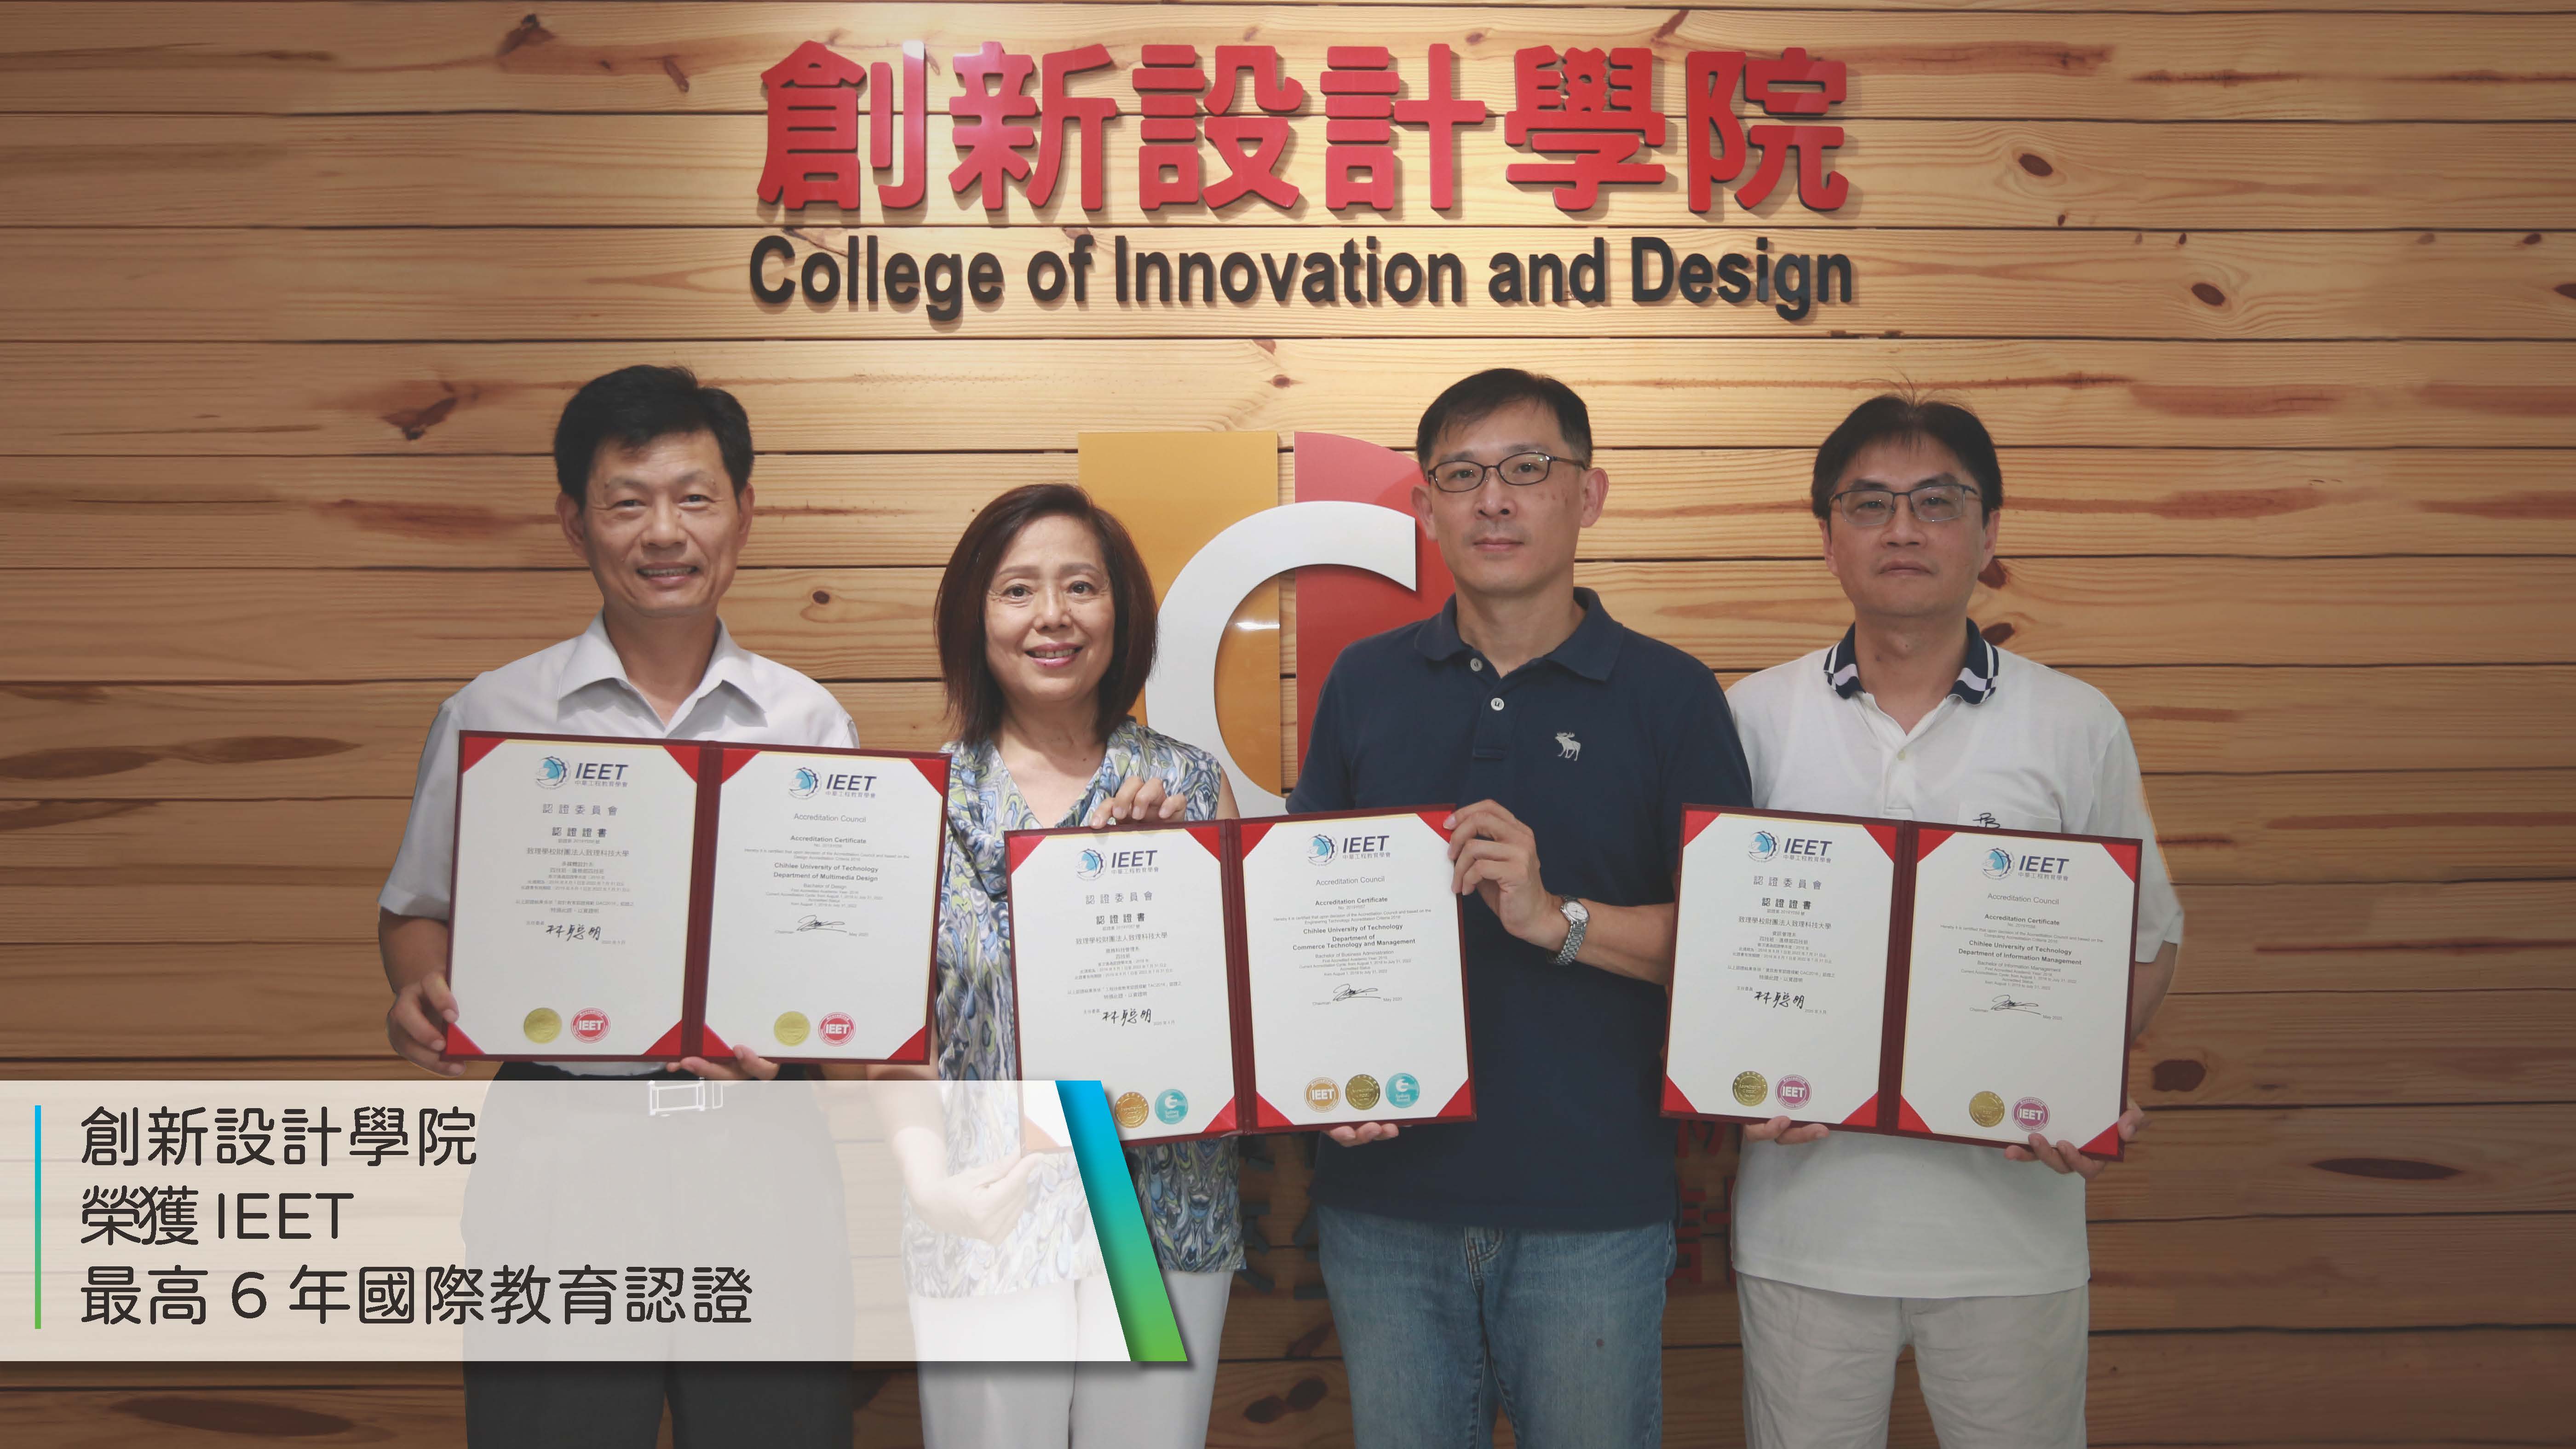 創新設計學院榮獲IEET最高6年國際教育認證